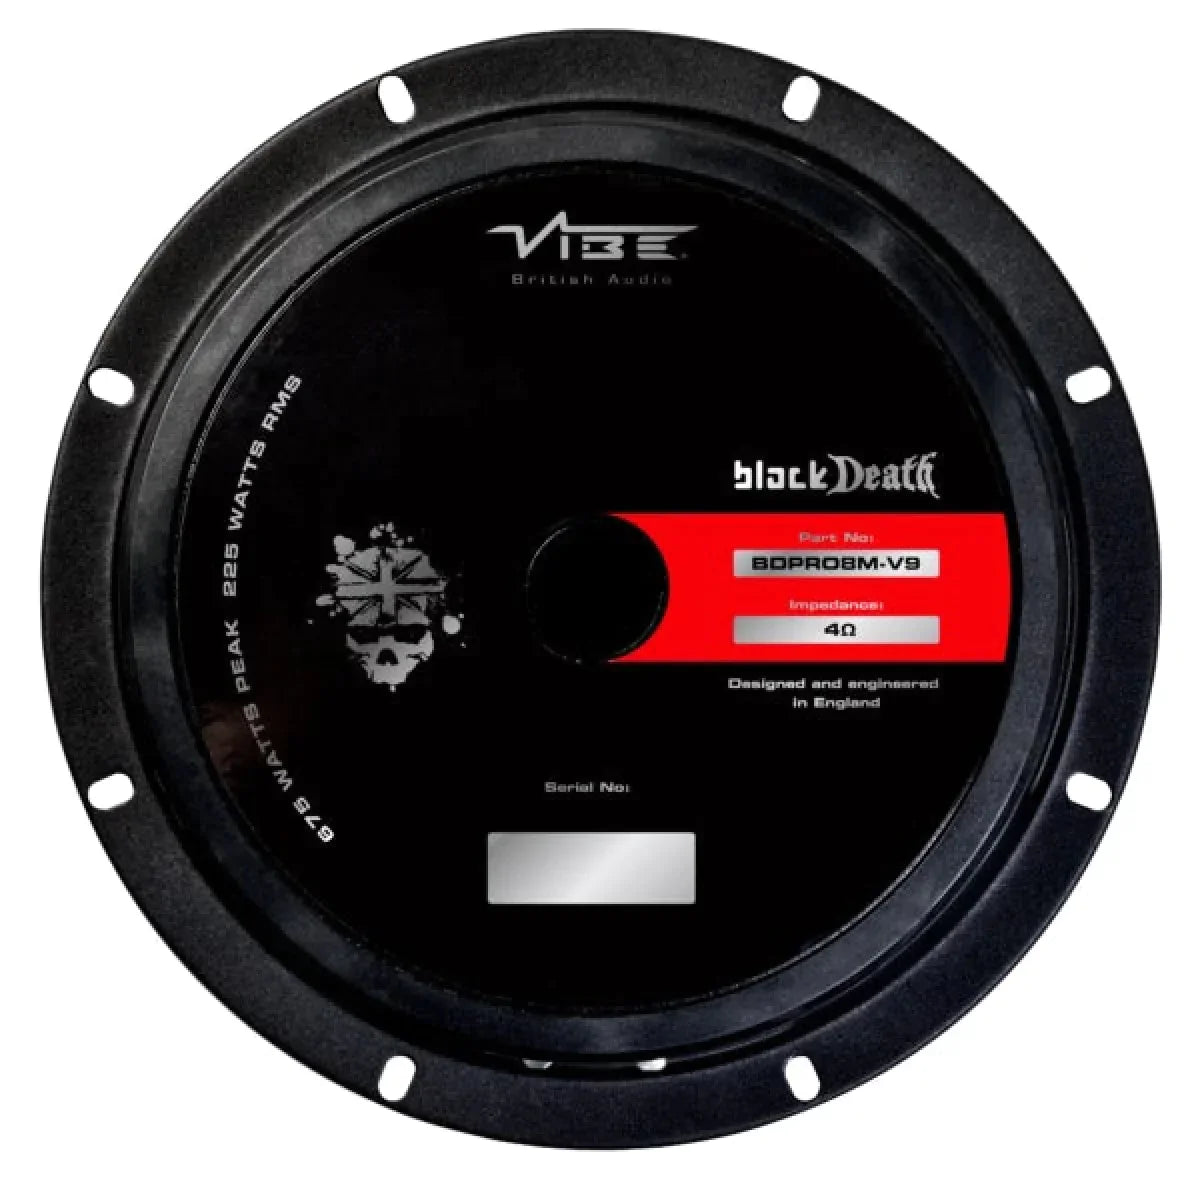 Vibe Audio-Blackdeath BDPRO 8M-V9-8" (20cm) Tiefmitteltöner-Masori.de